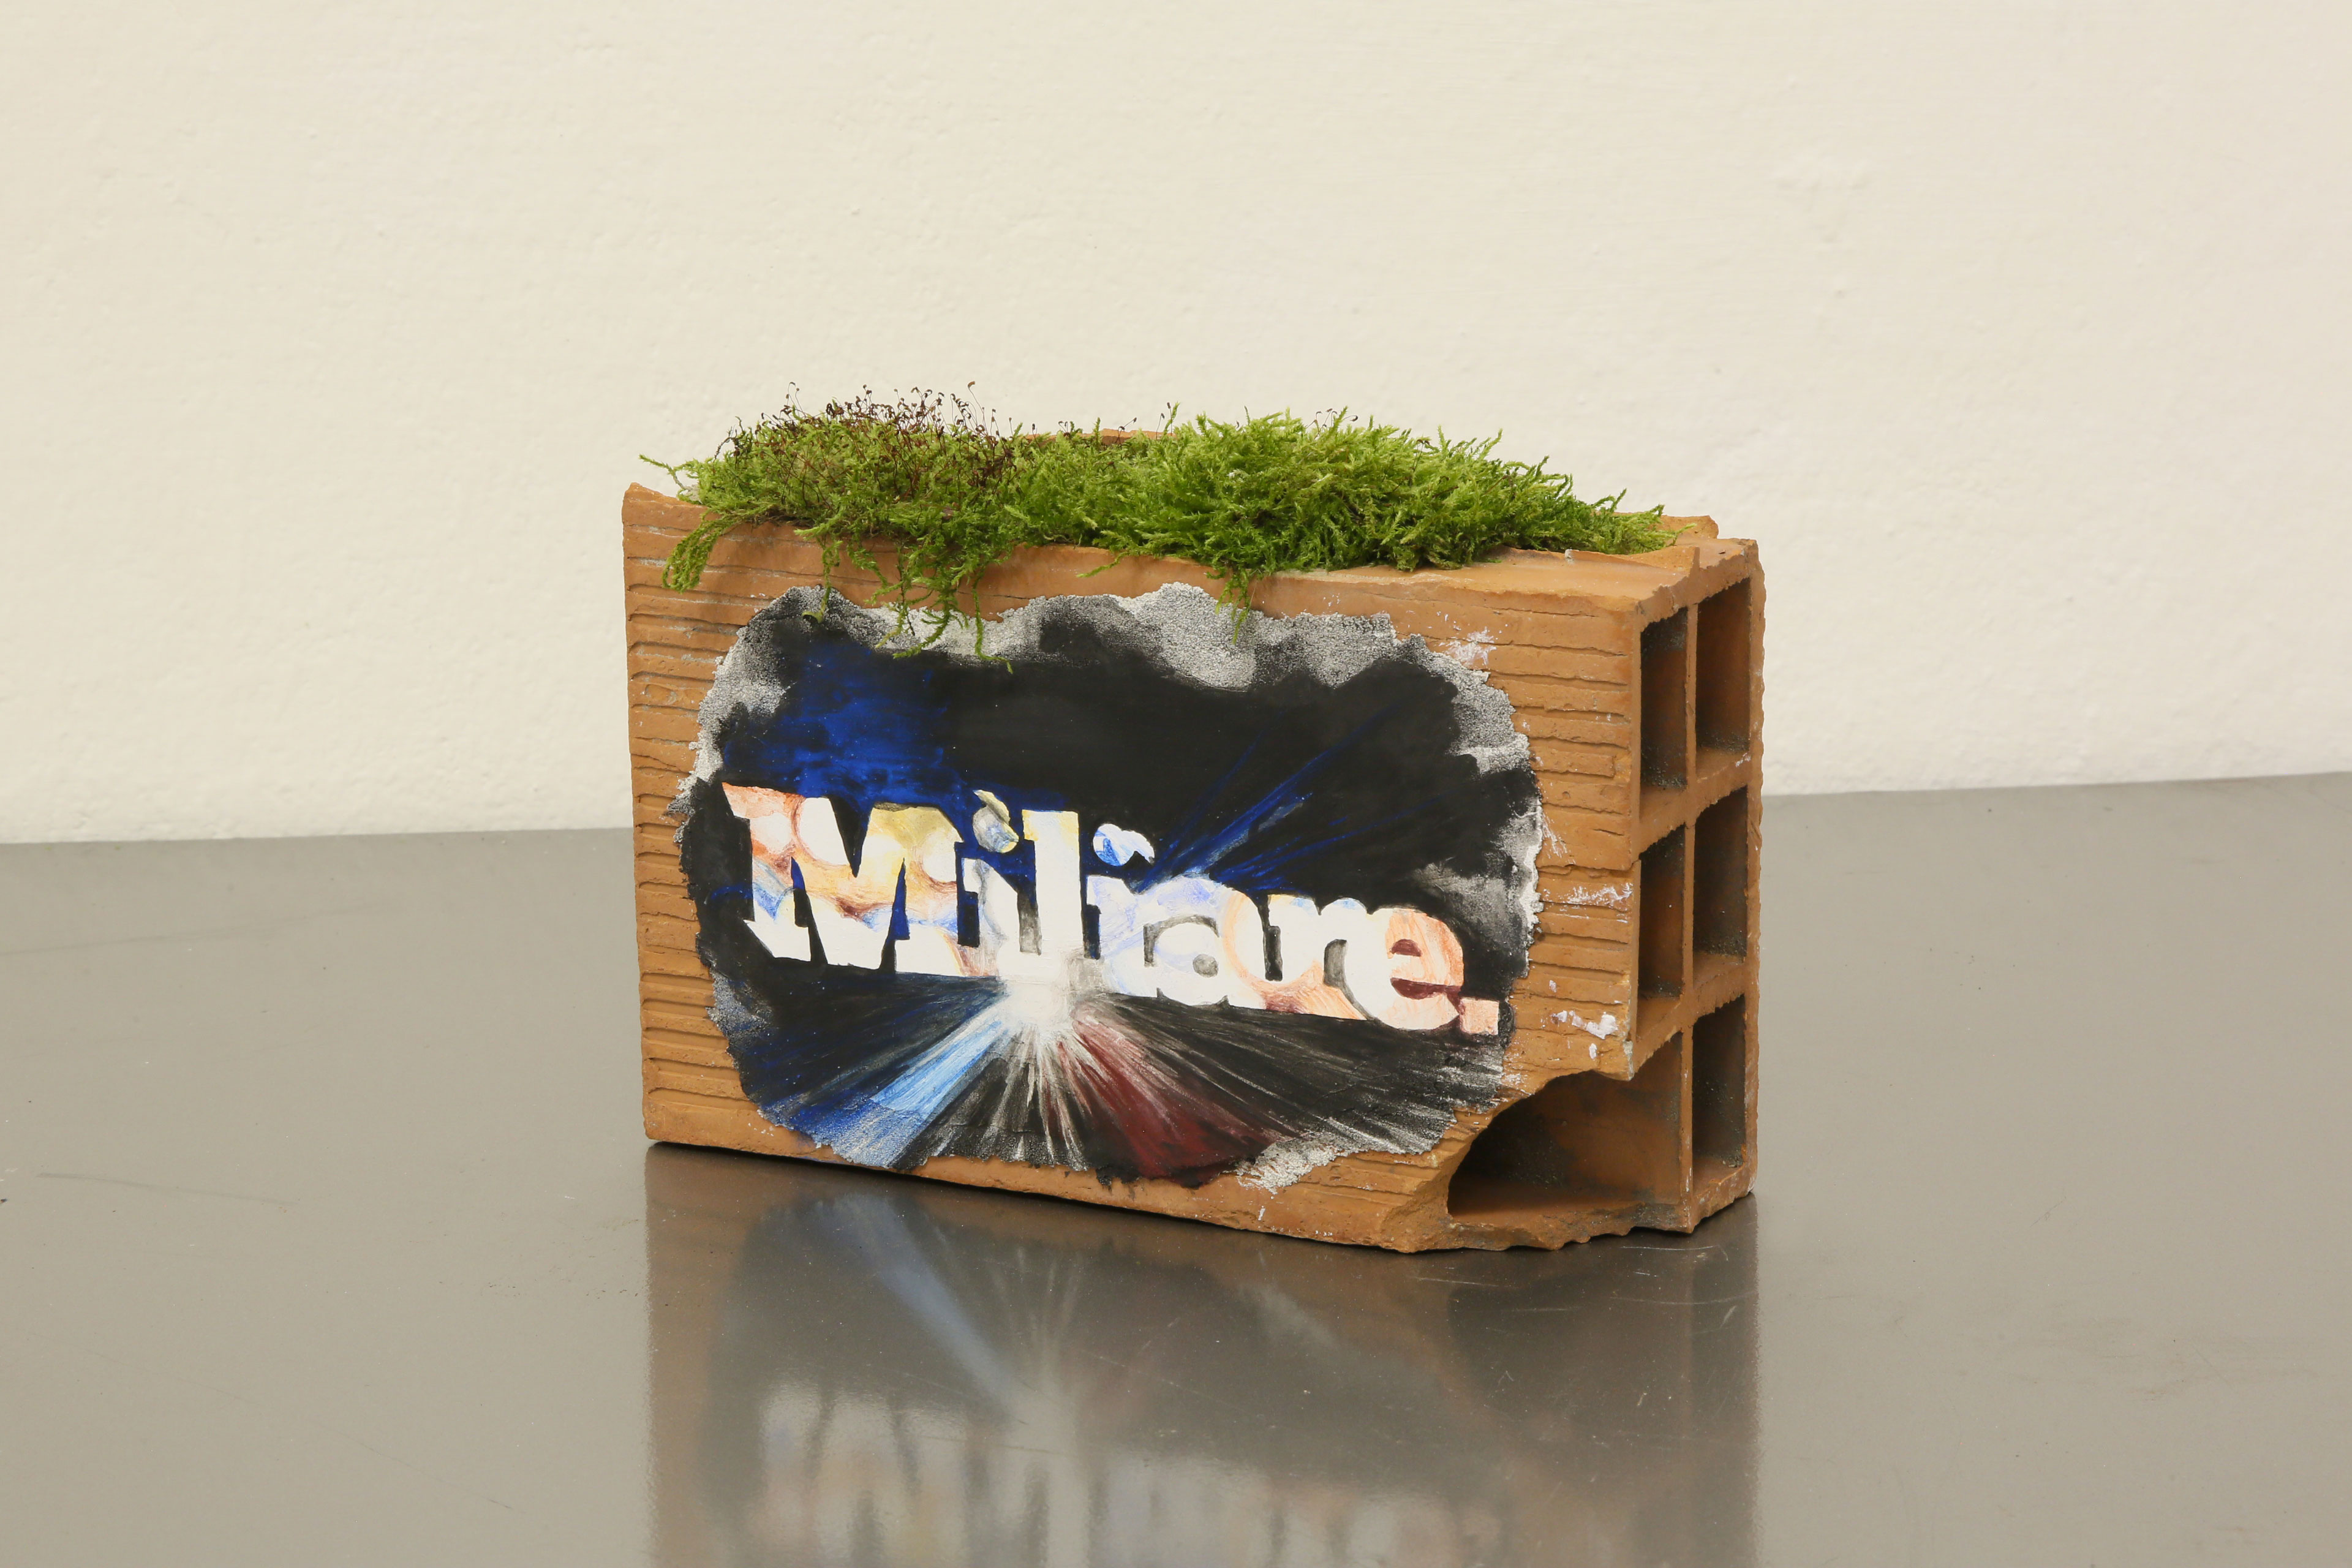 ''Miliare'' Affresco sur brique de terre cuite
24 x 16 x 10 cm
(variables dimensions) 2019